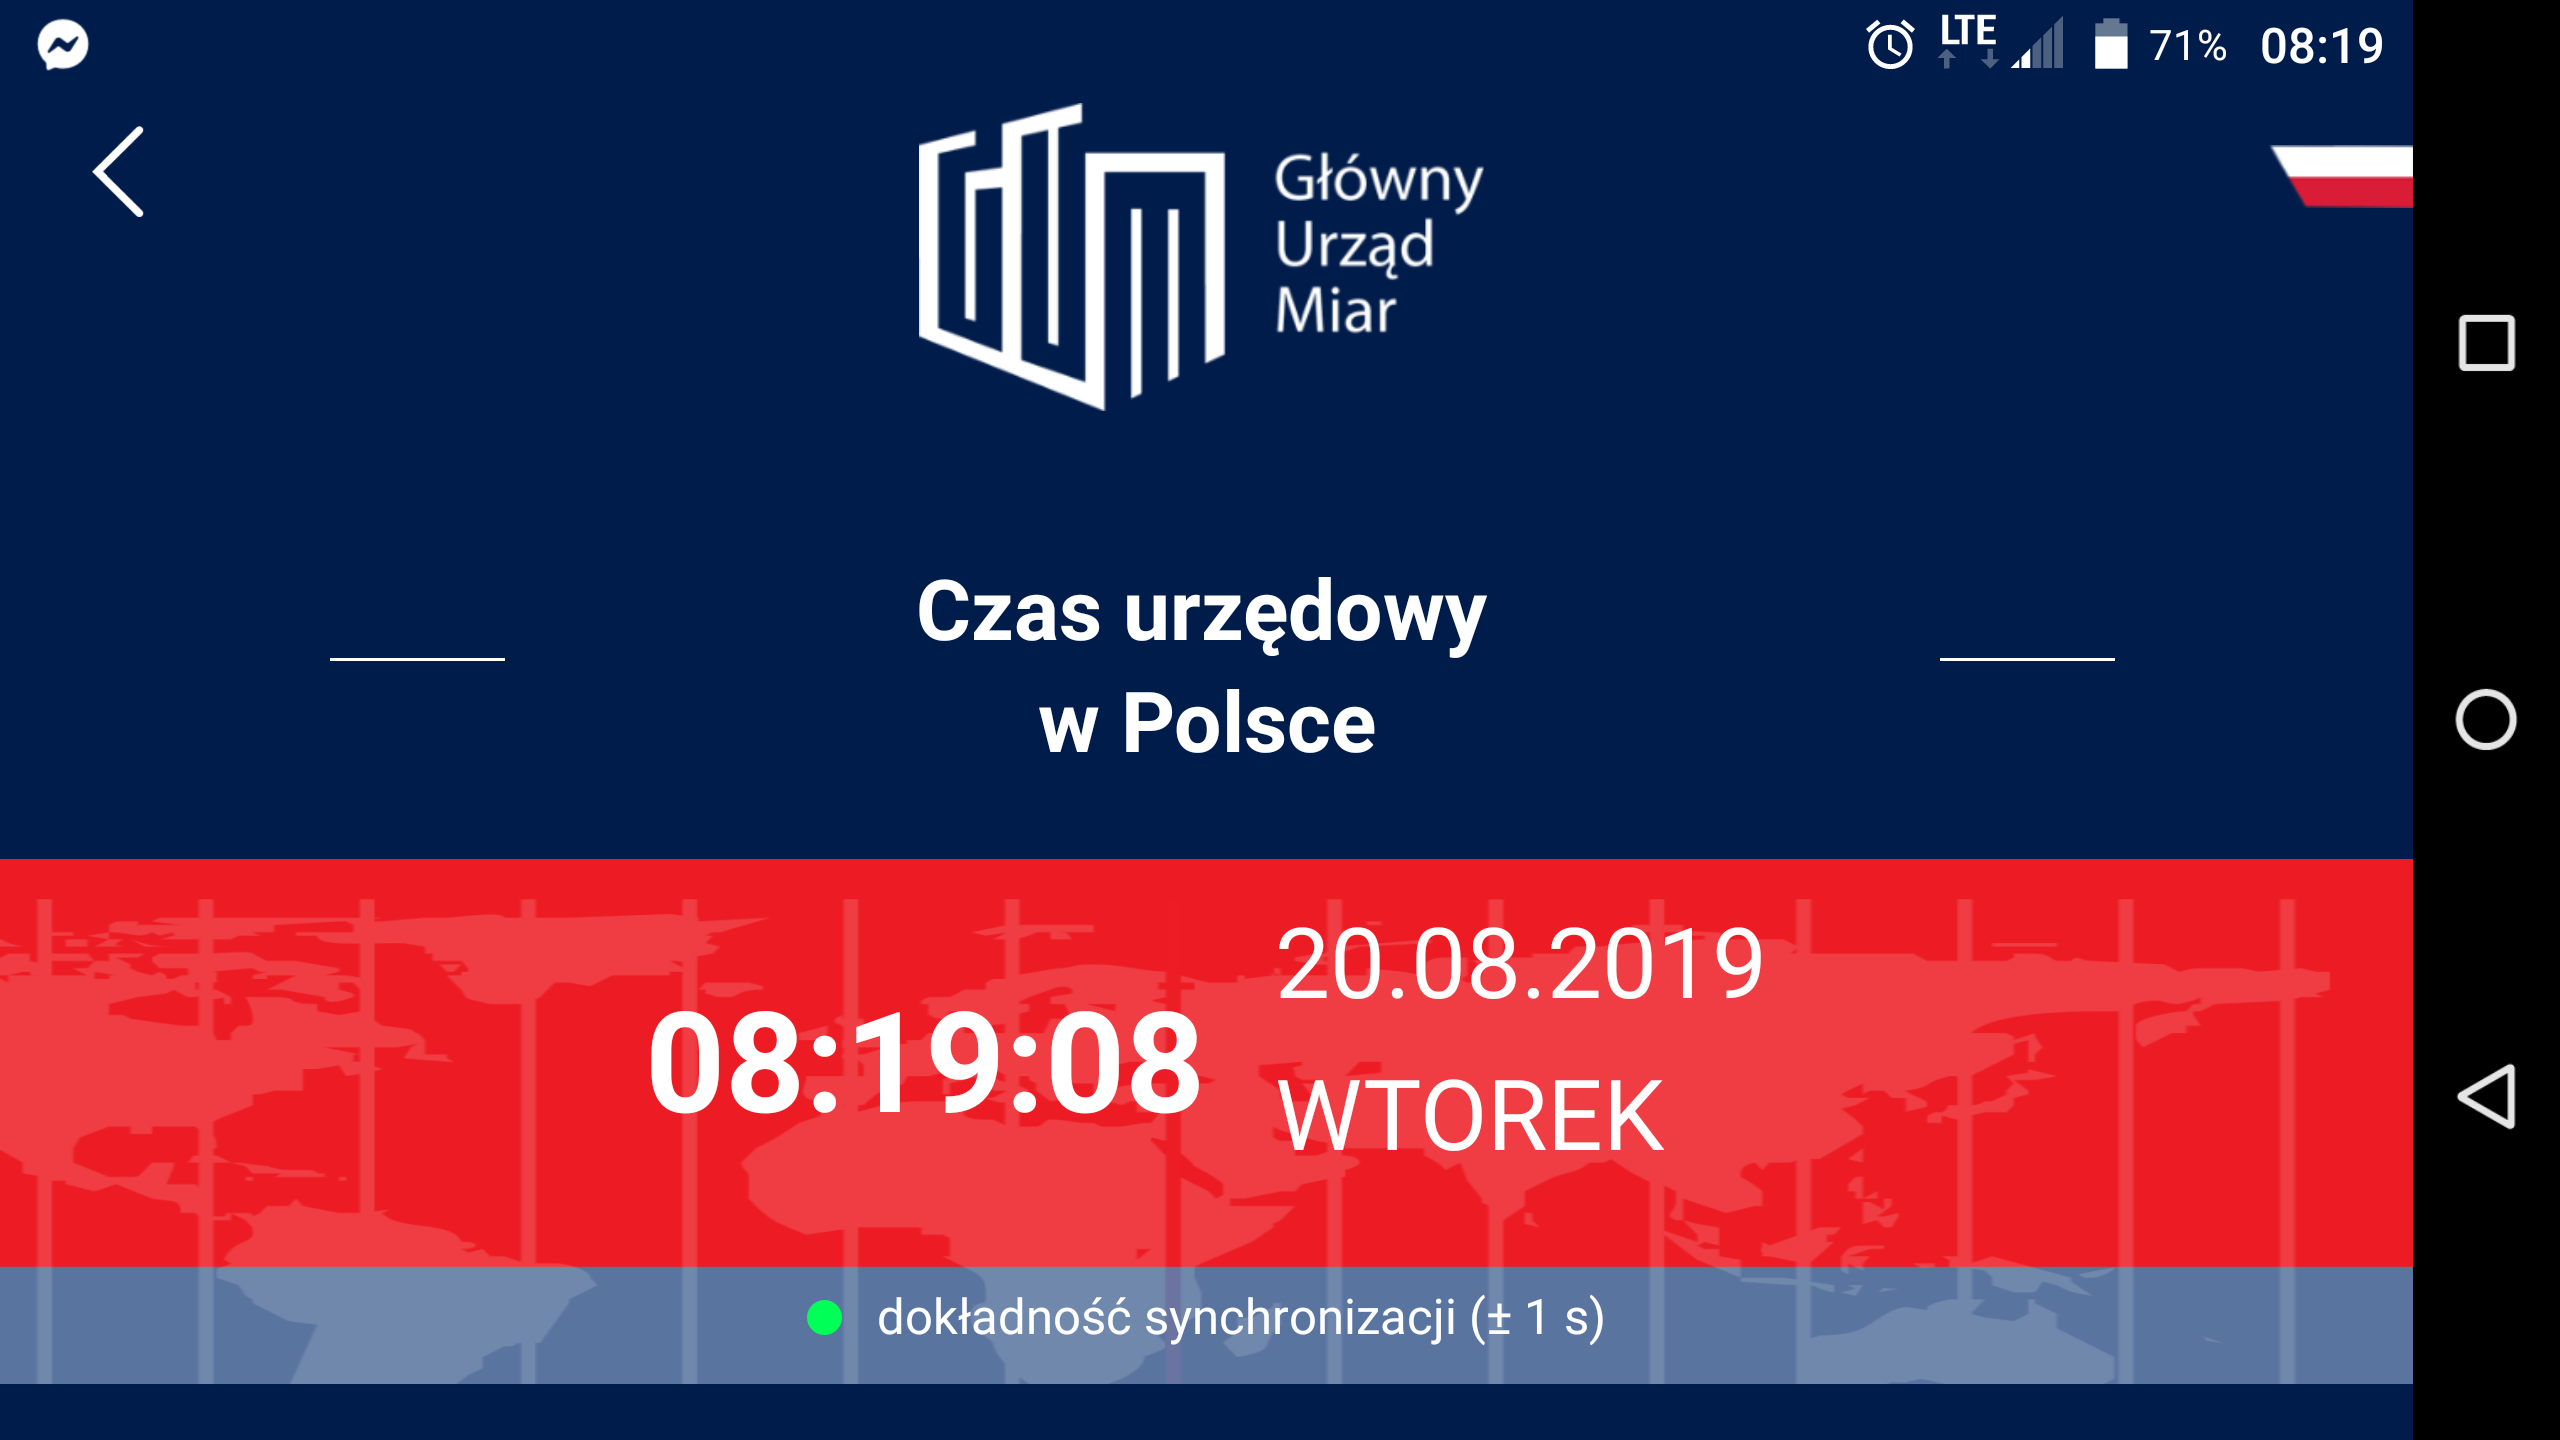 Jeden ze screenów aplikacji: Czas urzędowy w Polsce, data i godzina